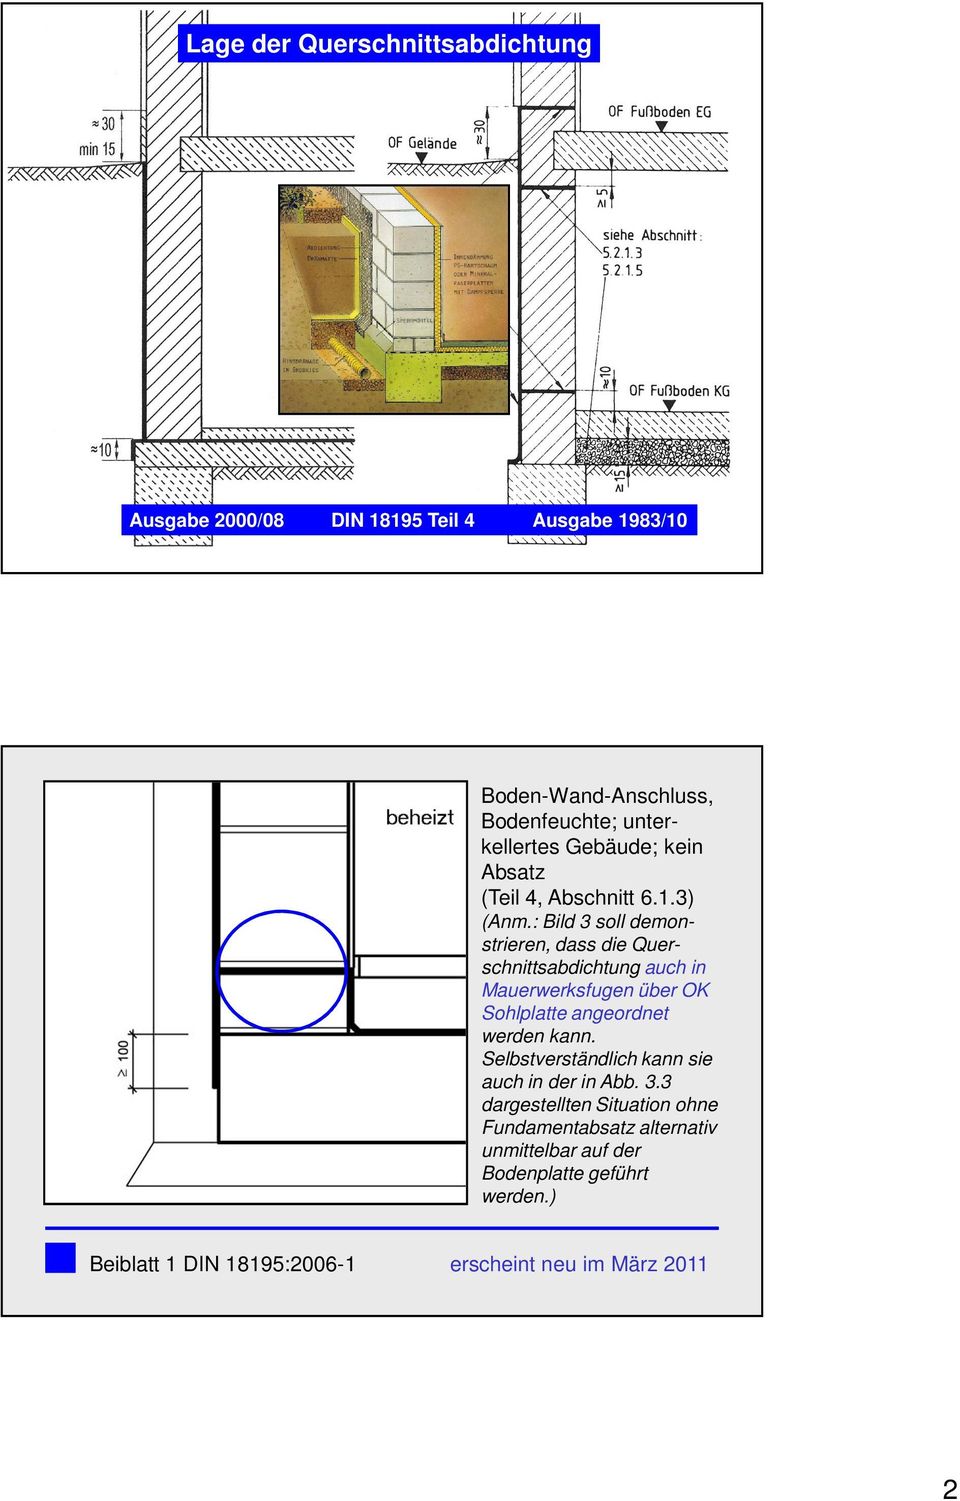 : Bild 3 soll demonstrieren, dass die Querschnittsabdichtung auch in Mauerwerksfugen über OK Sohlplatte angeordnet werden kann.